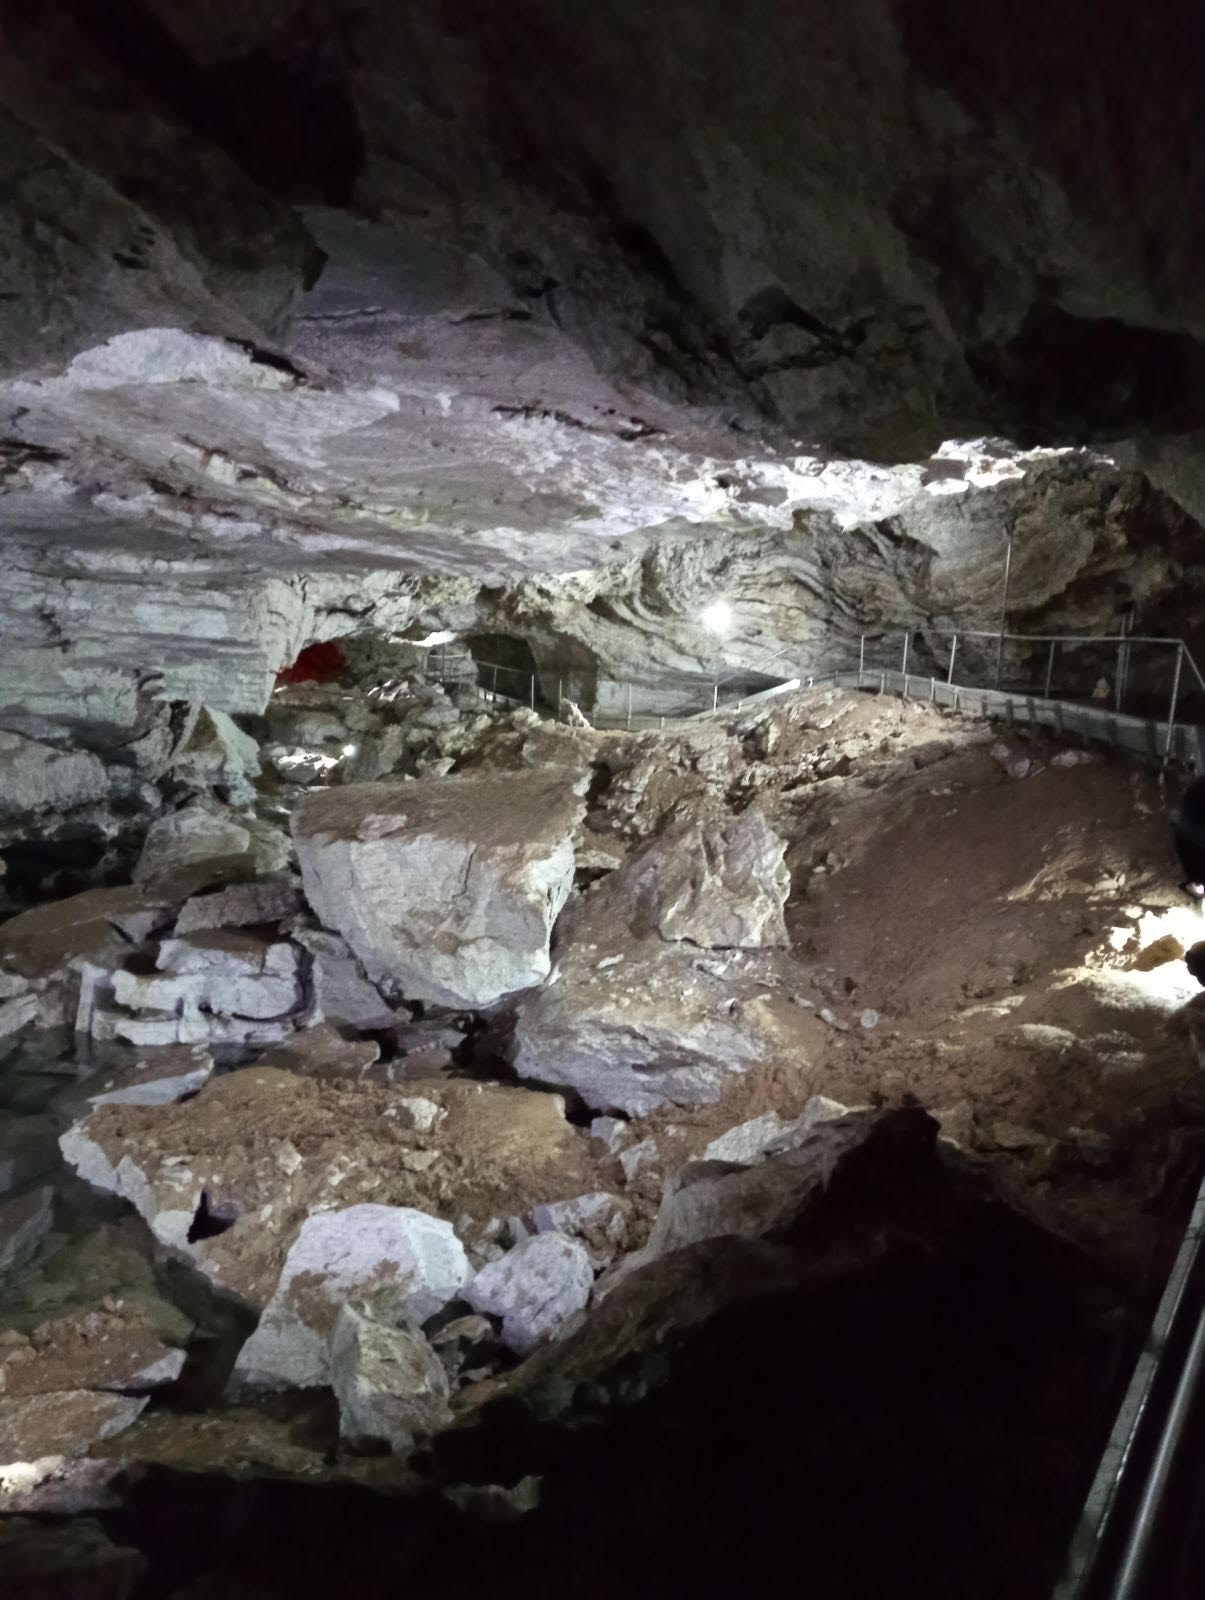 Кунгурская пещера.